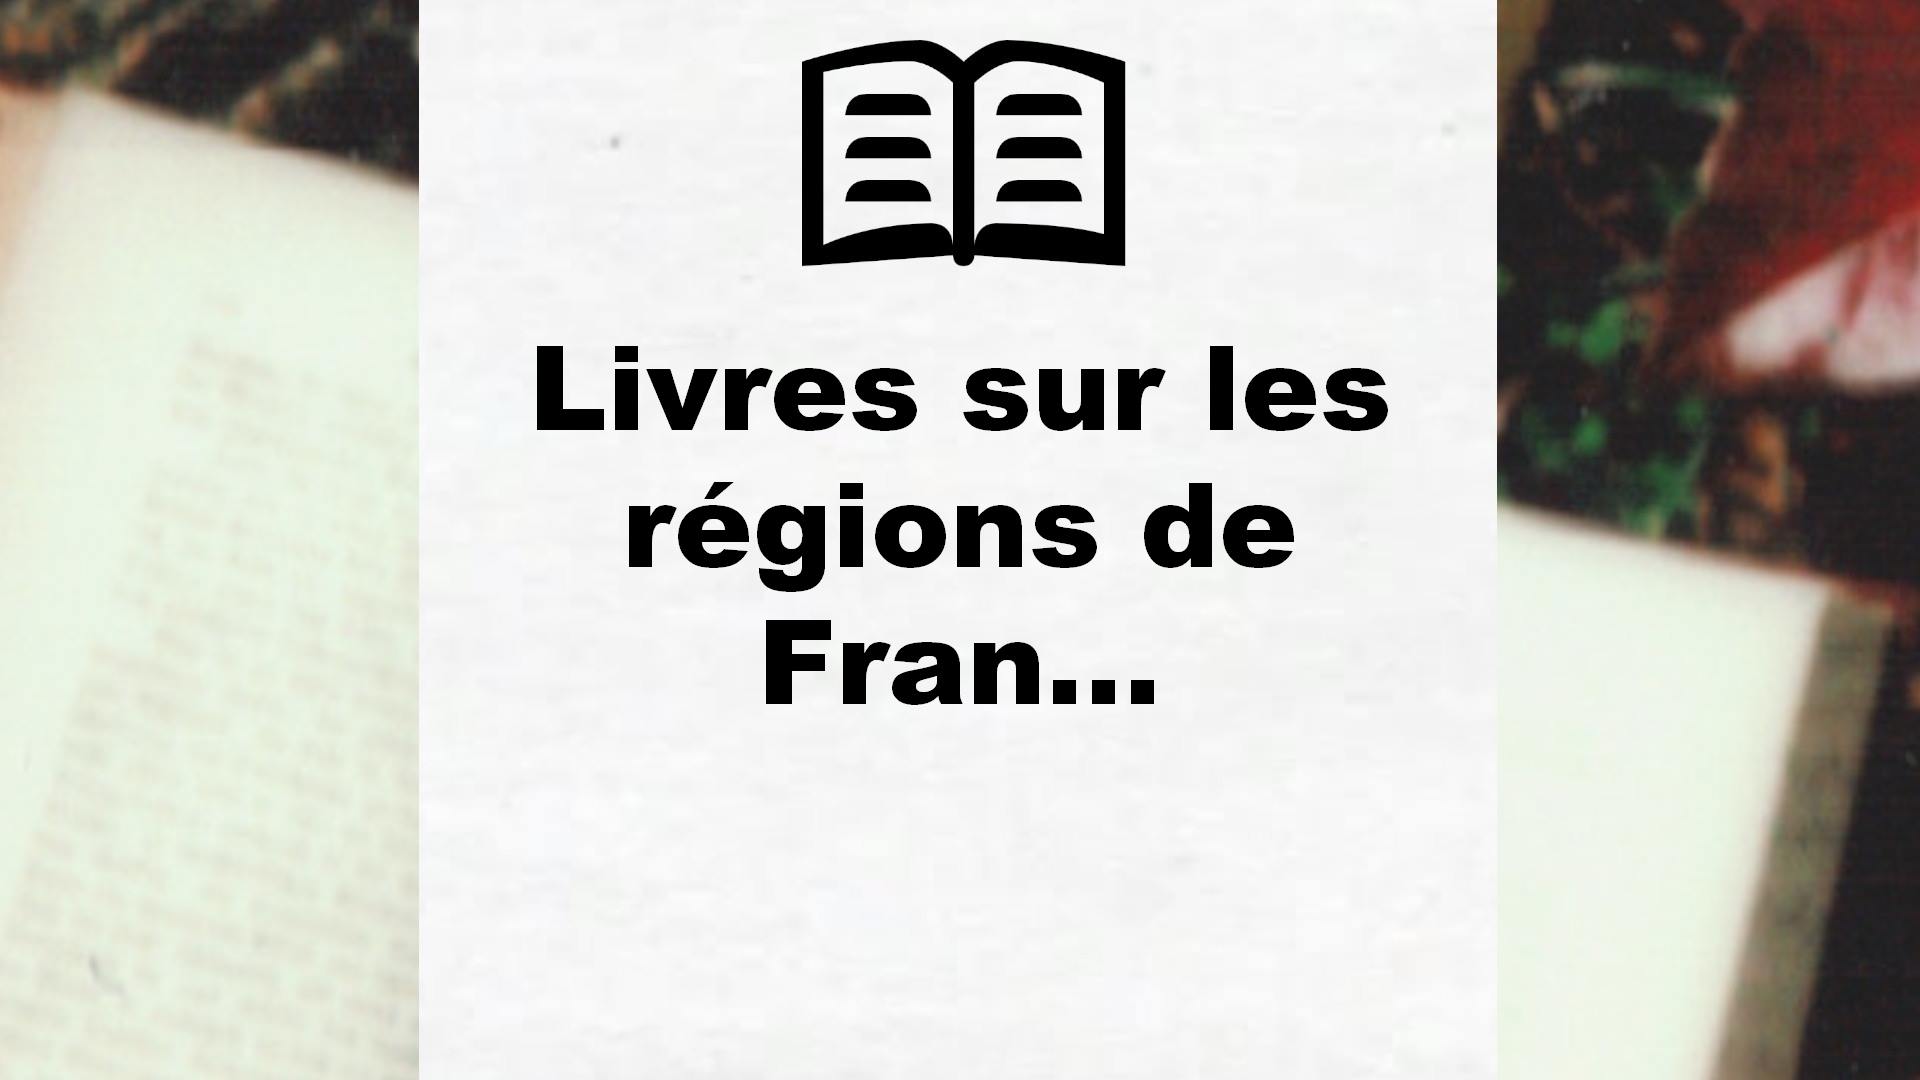 Livres sur les régions de France